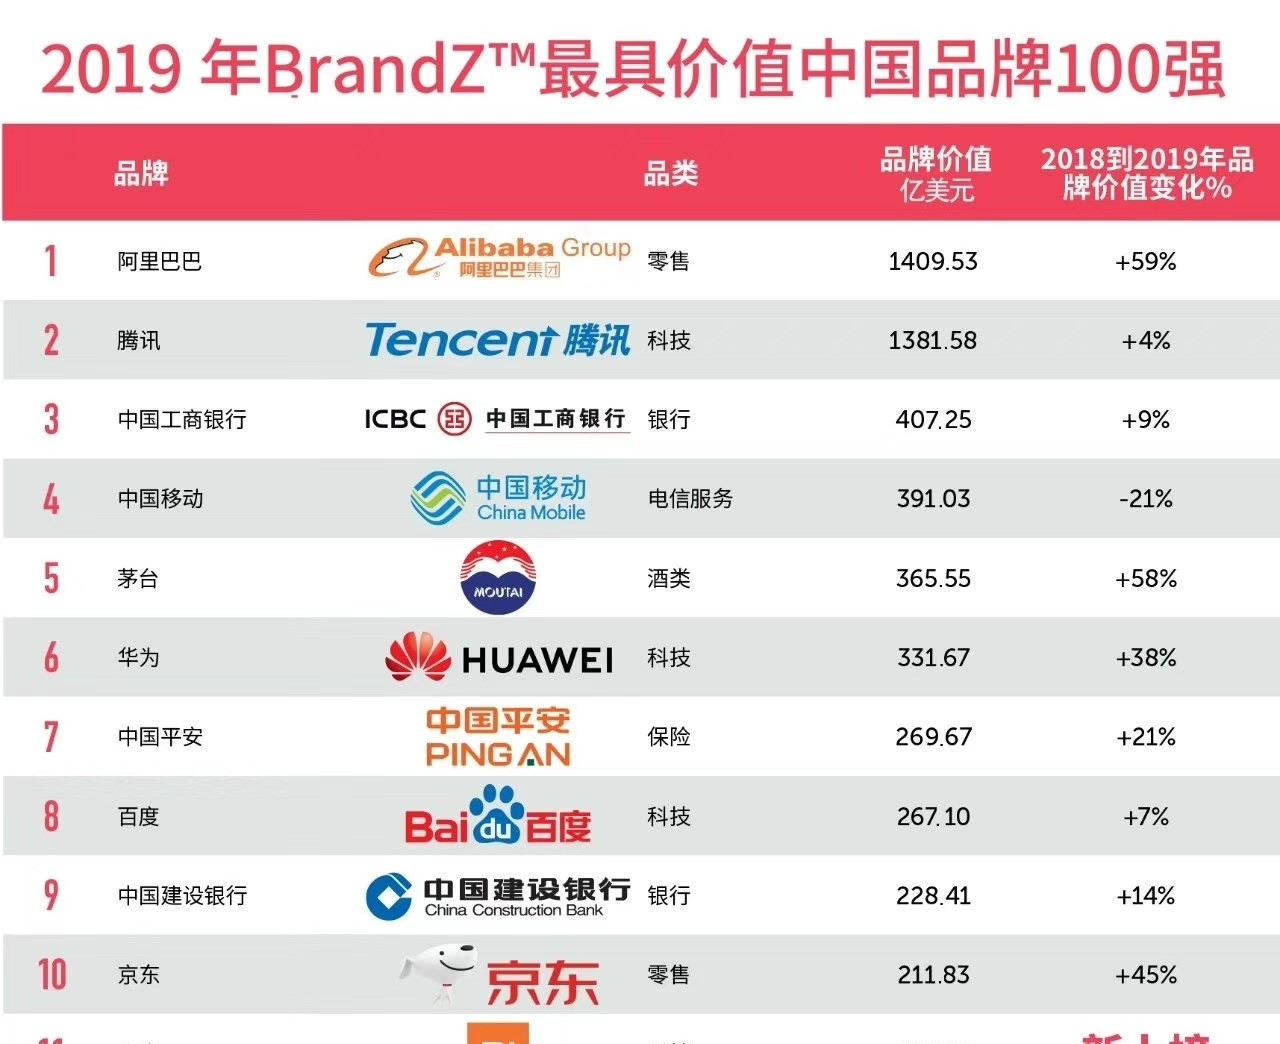 2019中国品牌排行榜_brandz 2019最具价值中国品牌100